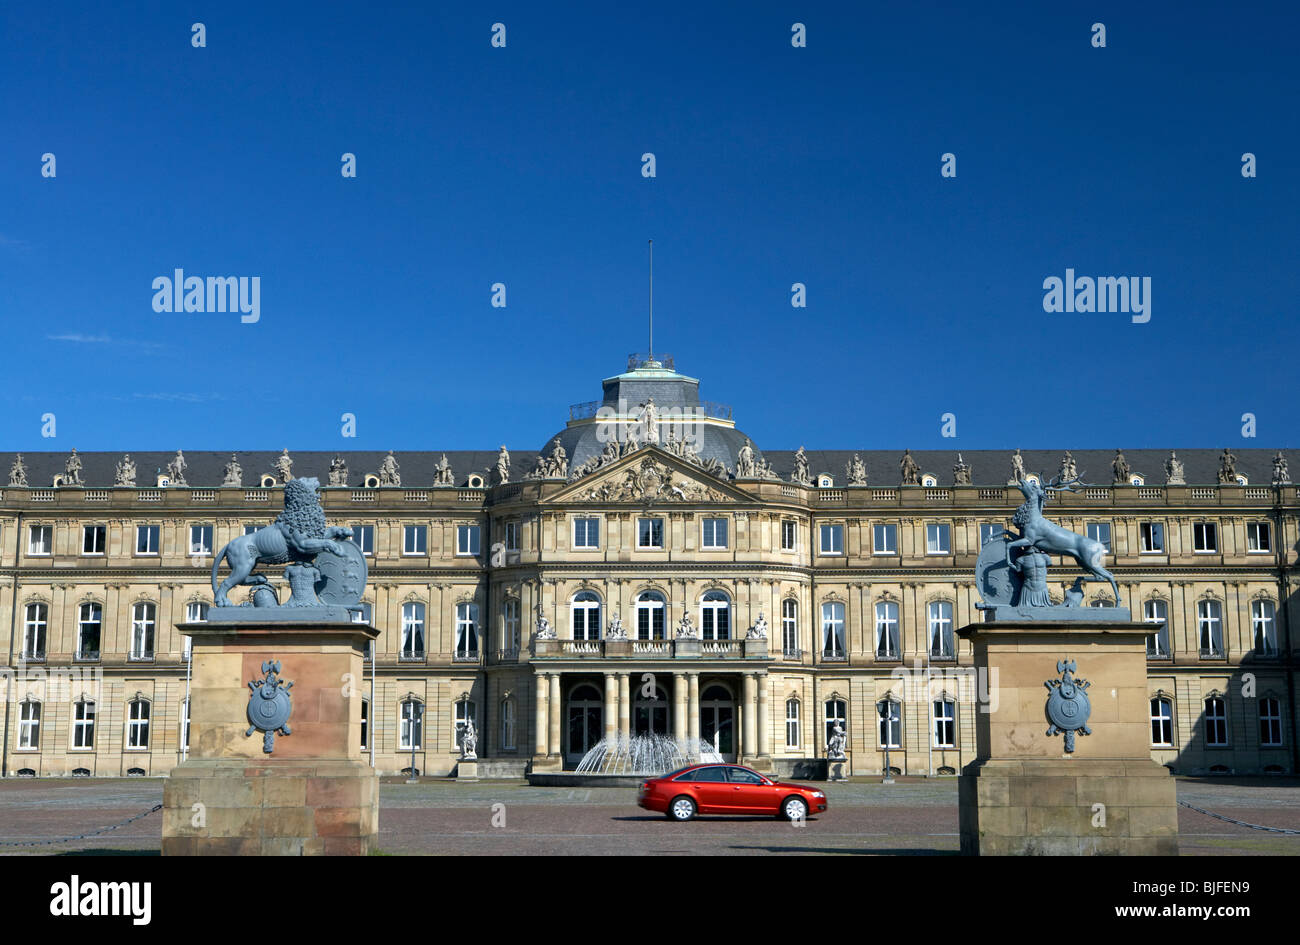 Le nouveau château à Stuttgart construit en 1746 dans le style baroque tardif, Allemagne Banque D'Images